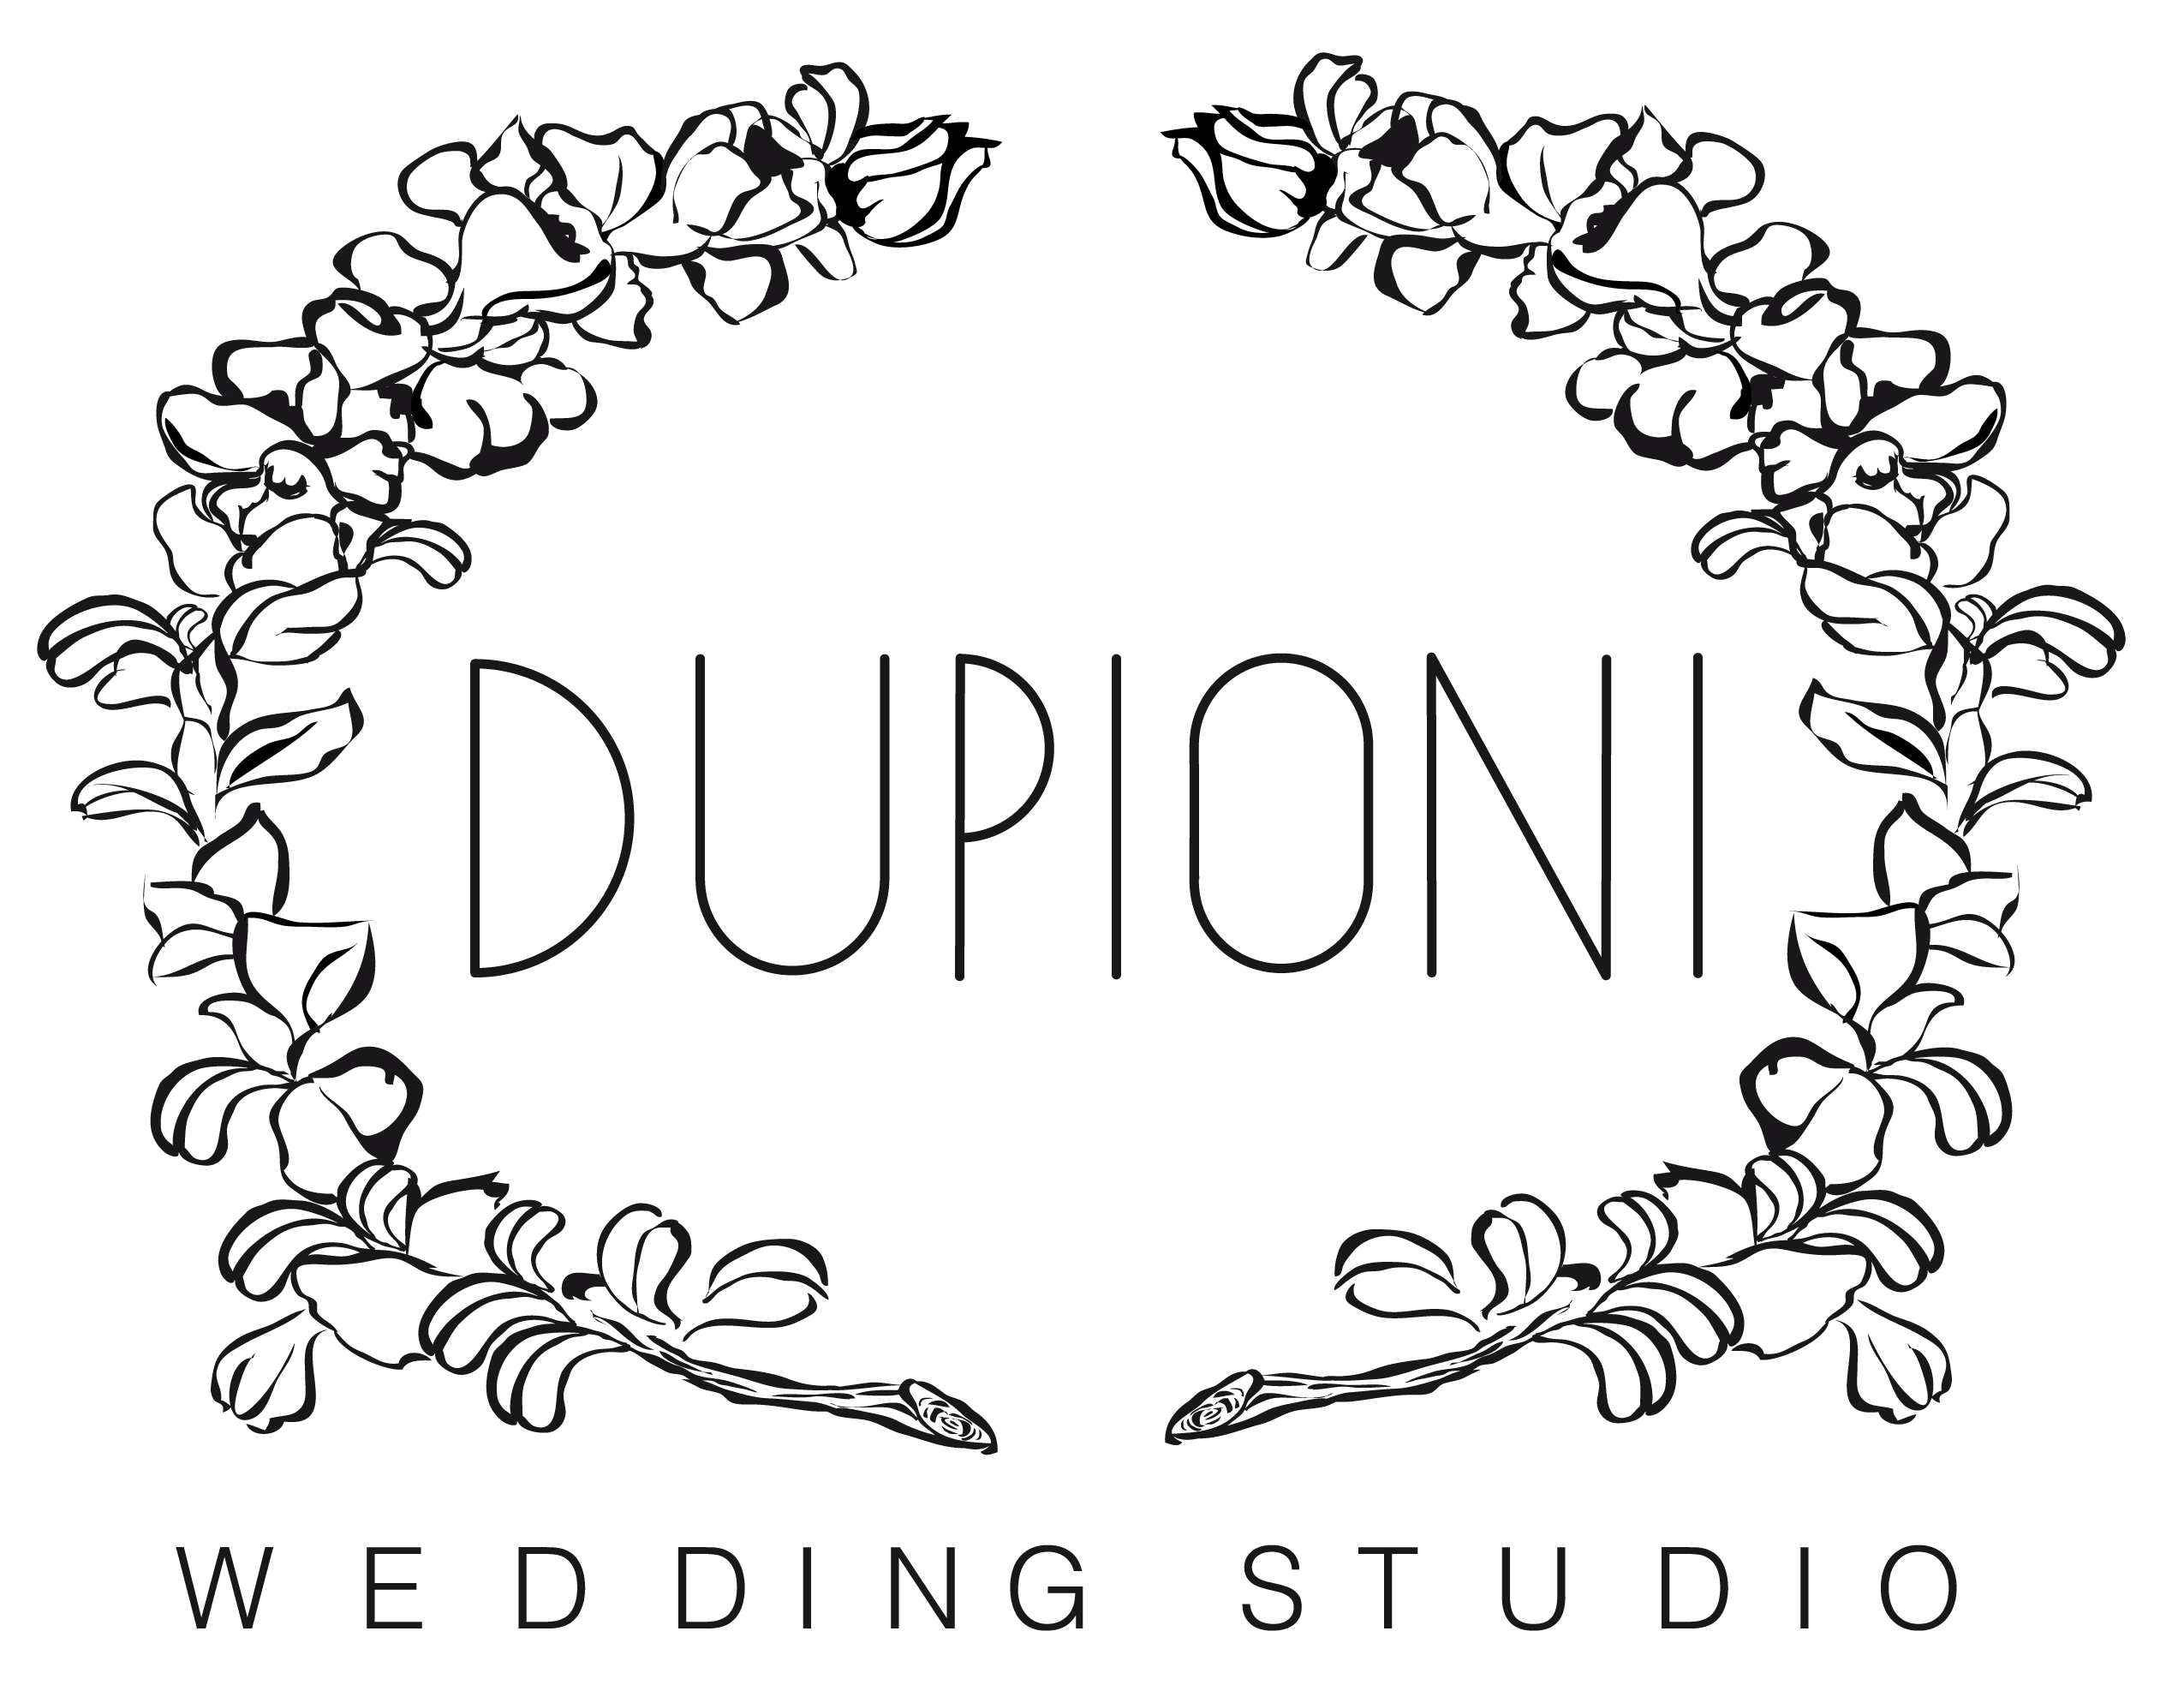 Dupioni Studio